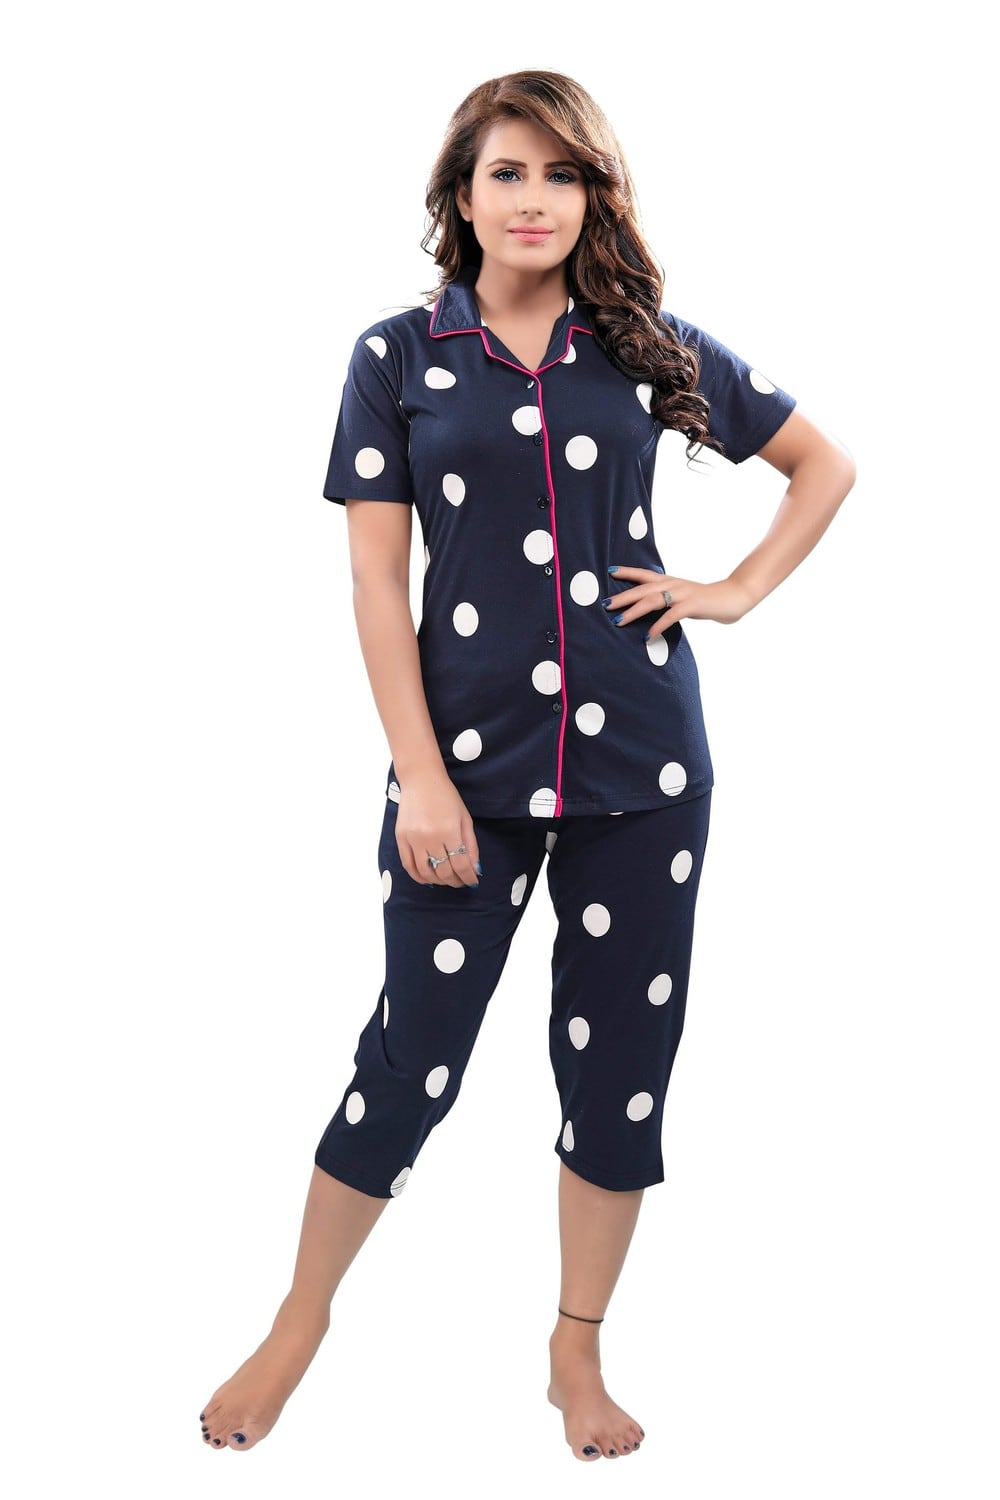 Pierre Donna Women's Cotton Pajama set With Pants - Women Sleepwear Navy Blue Color AVL - Dealz Souq